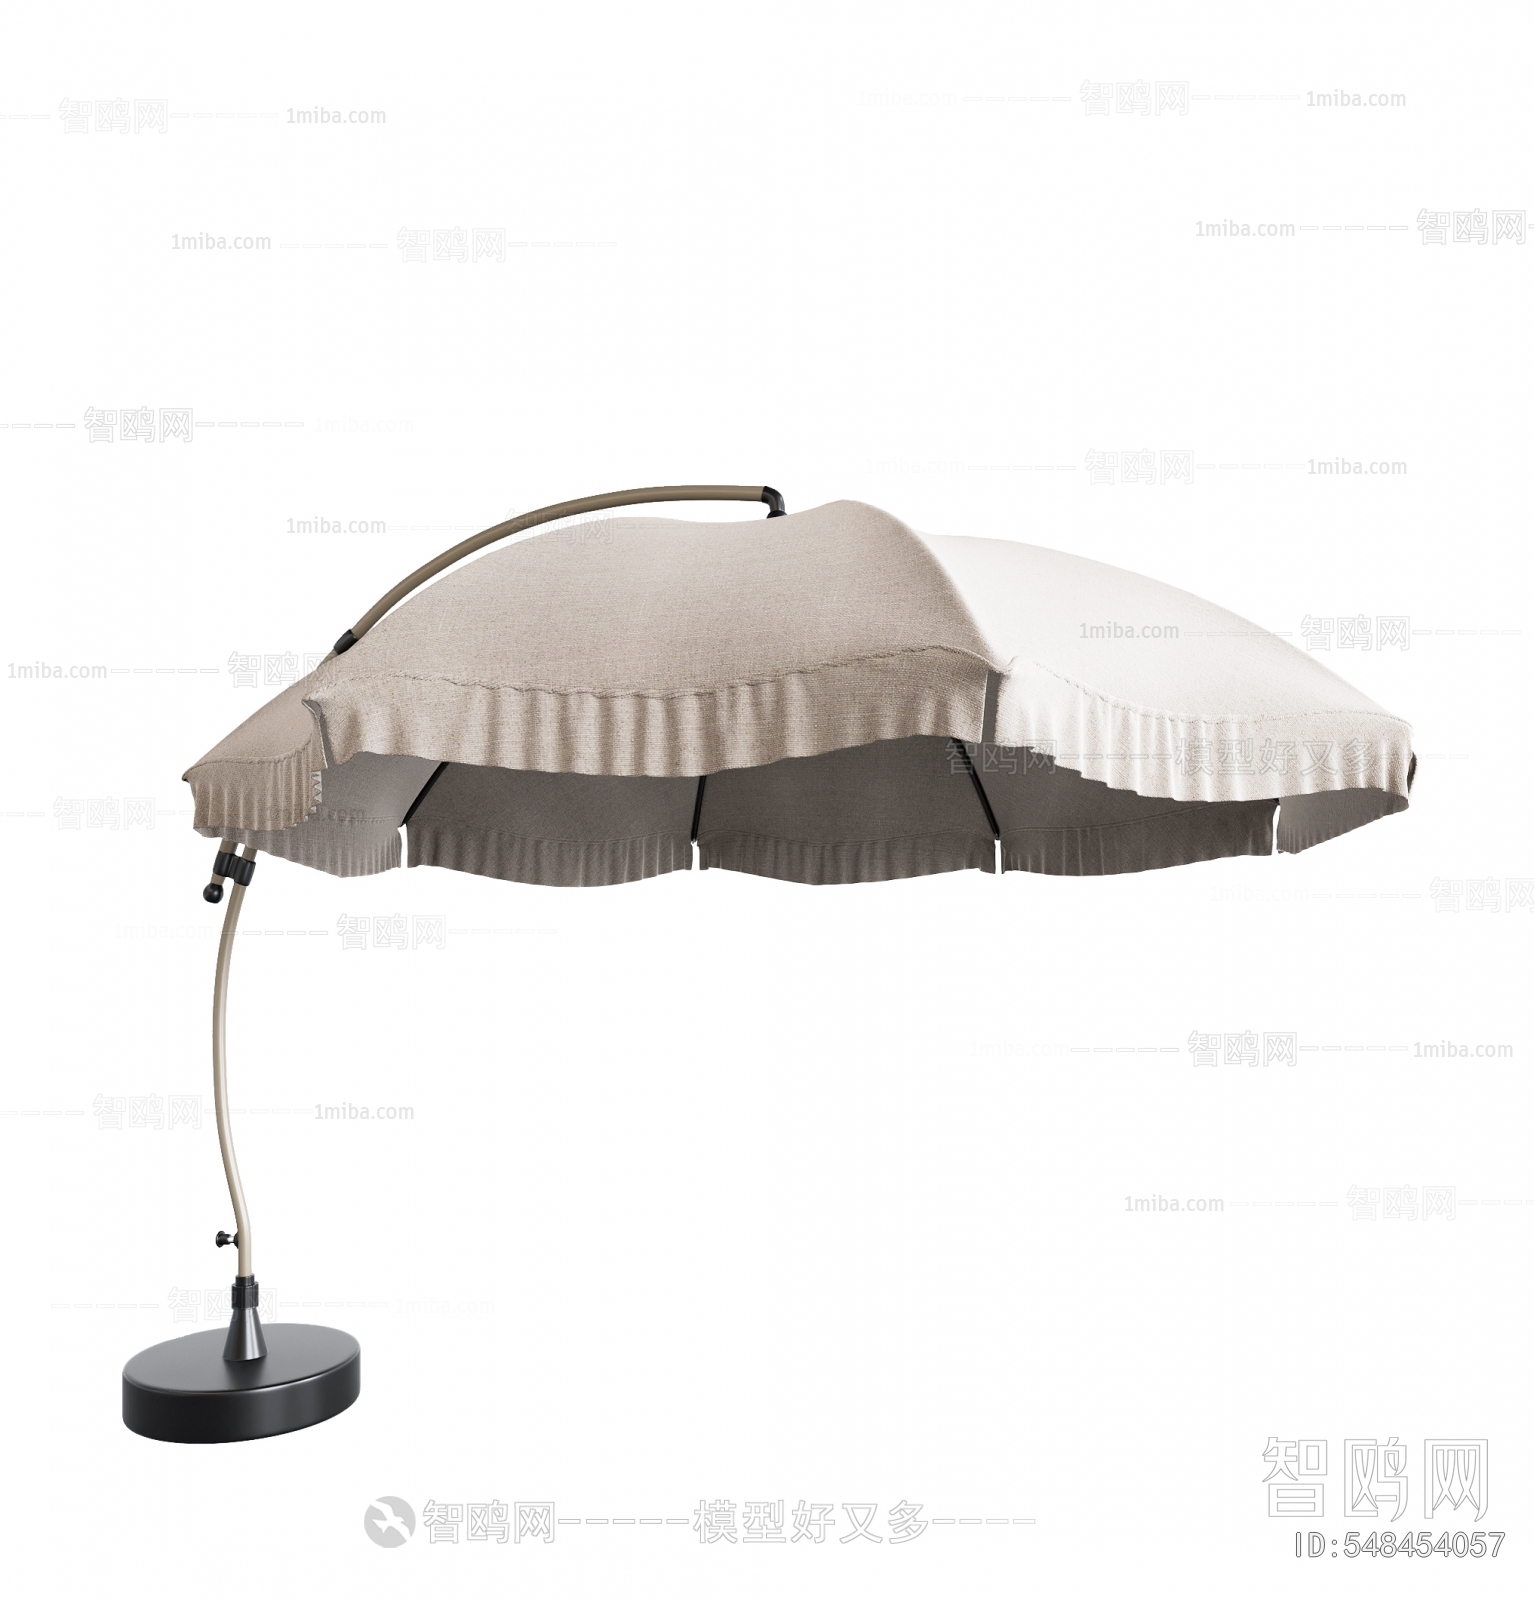 现代户外遮阳伞